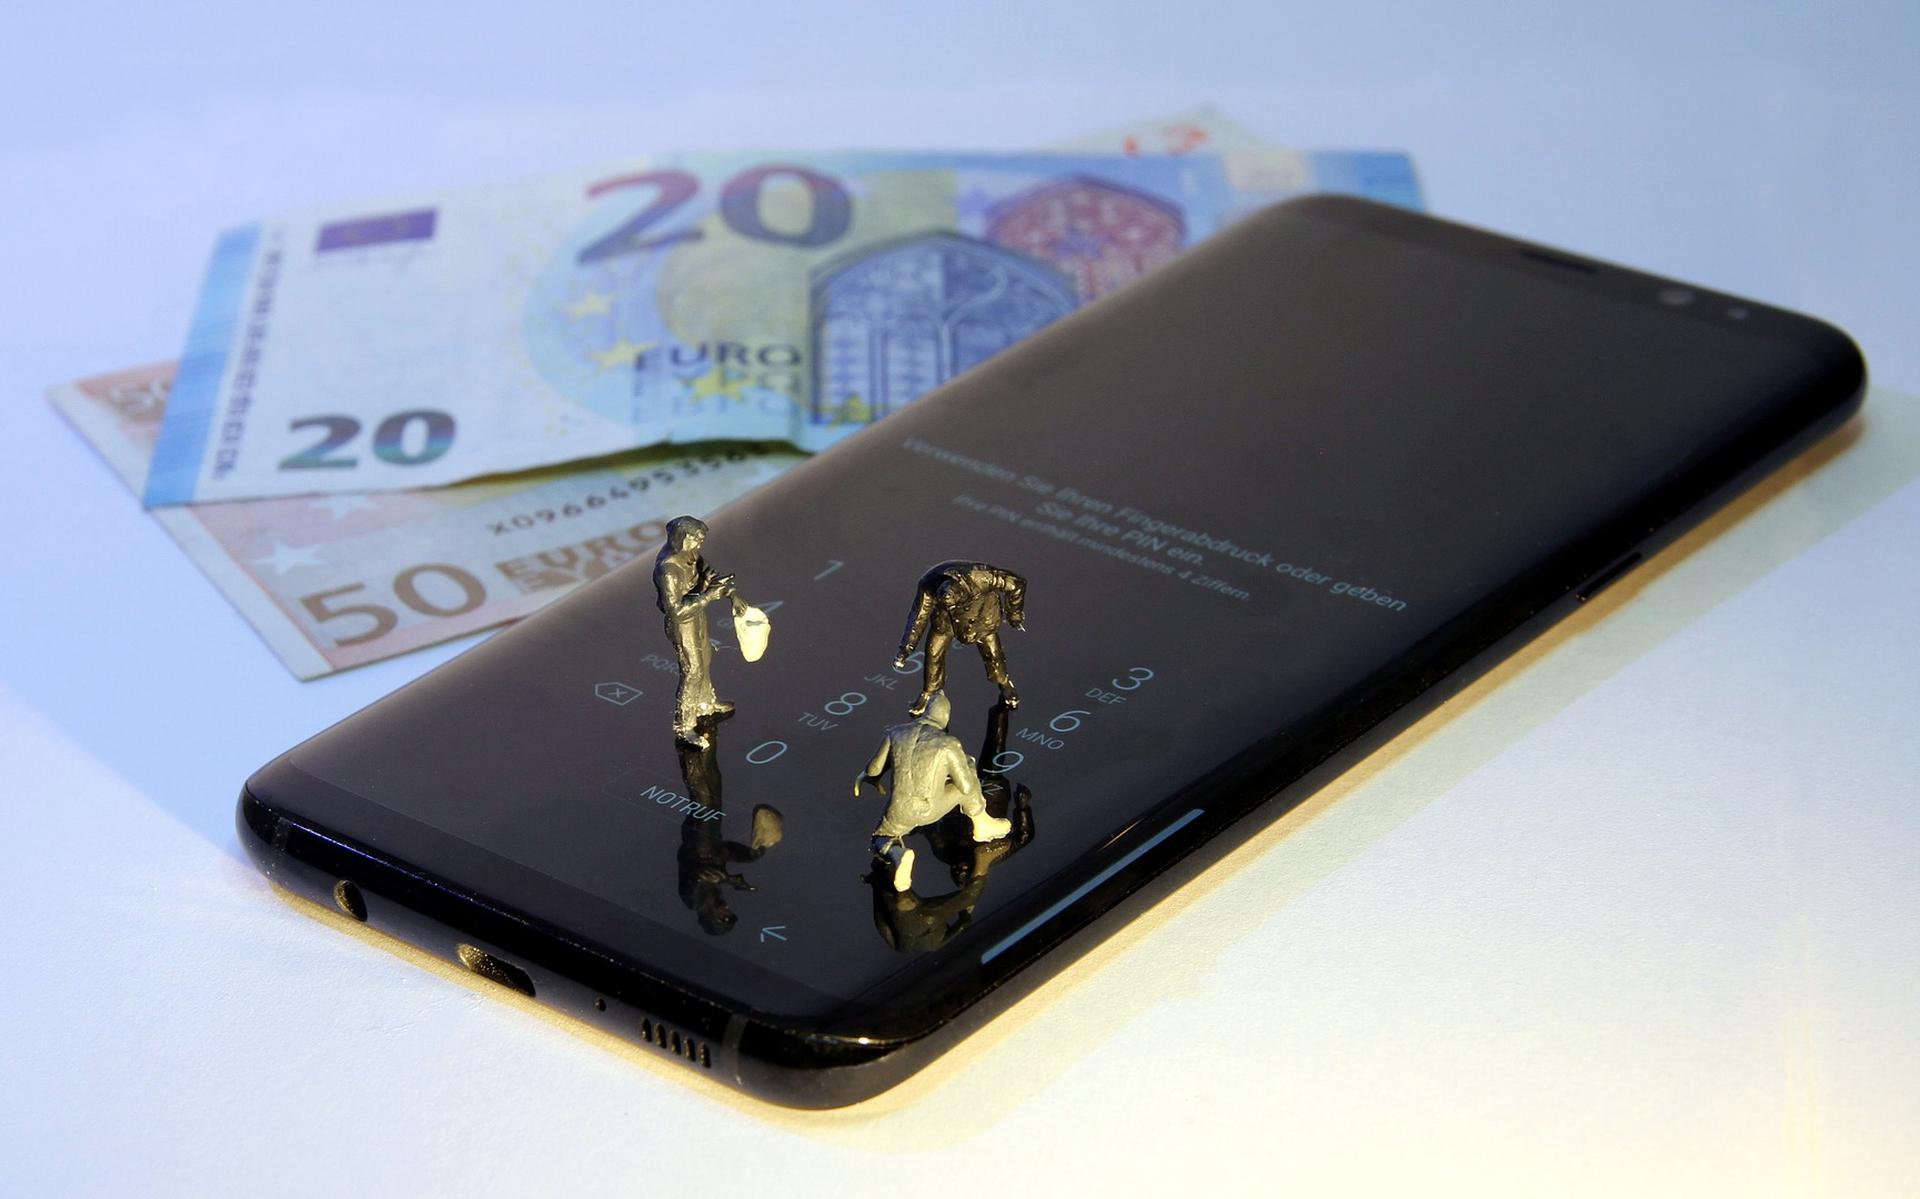 Banken moet het betalingsverkeer via de smartphone beter beveiligen. Criminelen liggen op de lloer om betalingsgegevens te ontfutselen Foto: Pixabay